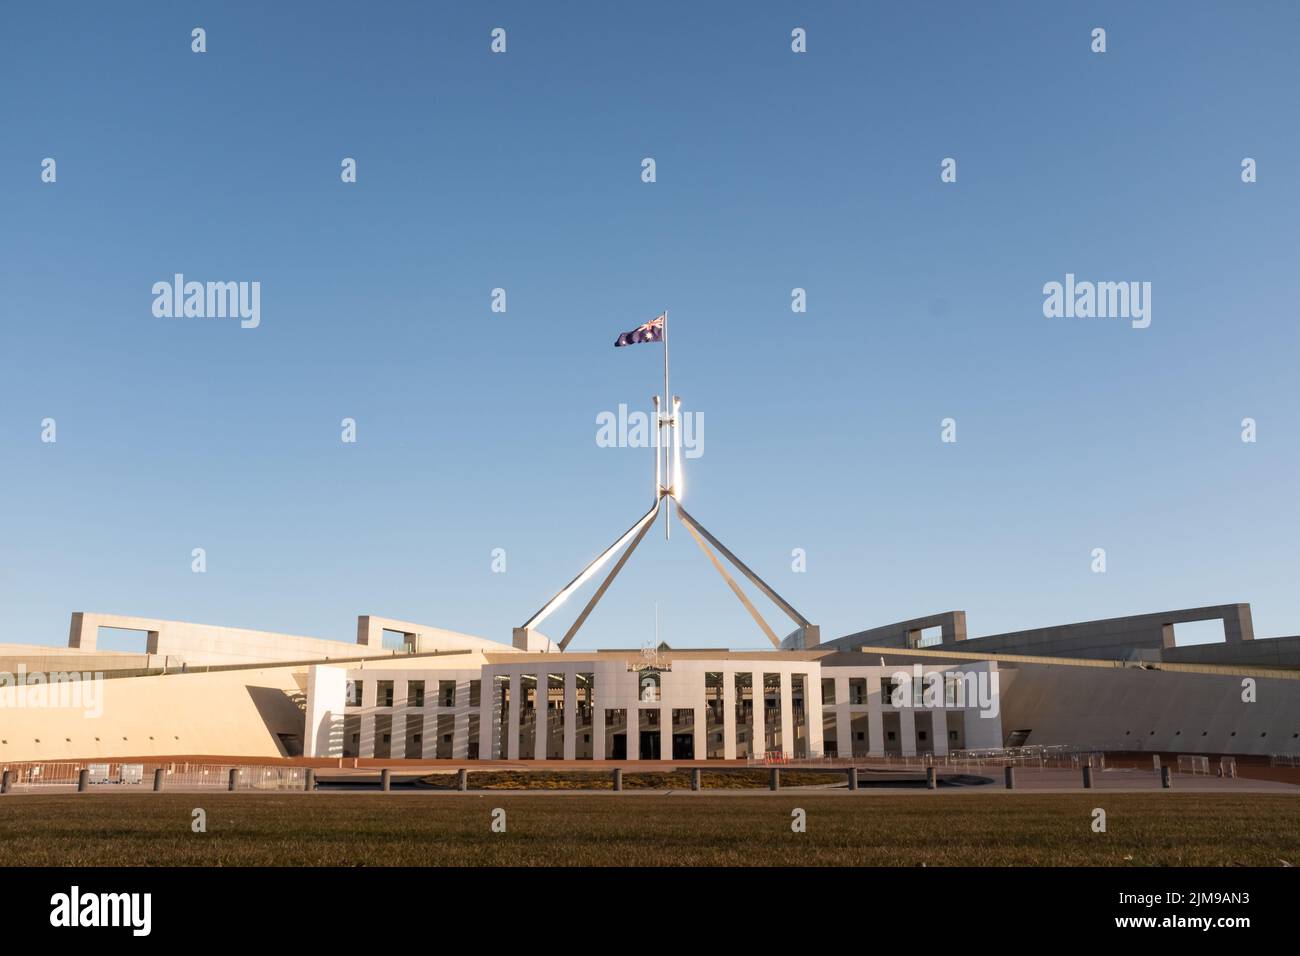 La nouvelle Maison du Parlement australien à Canberra, en Australie, au coucher du soleil Banque D'Images